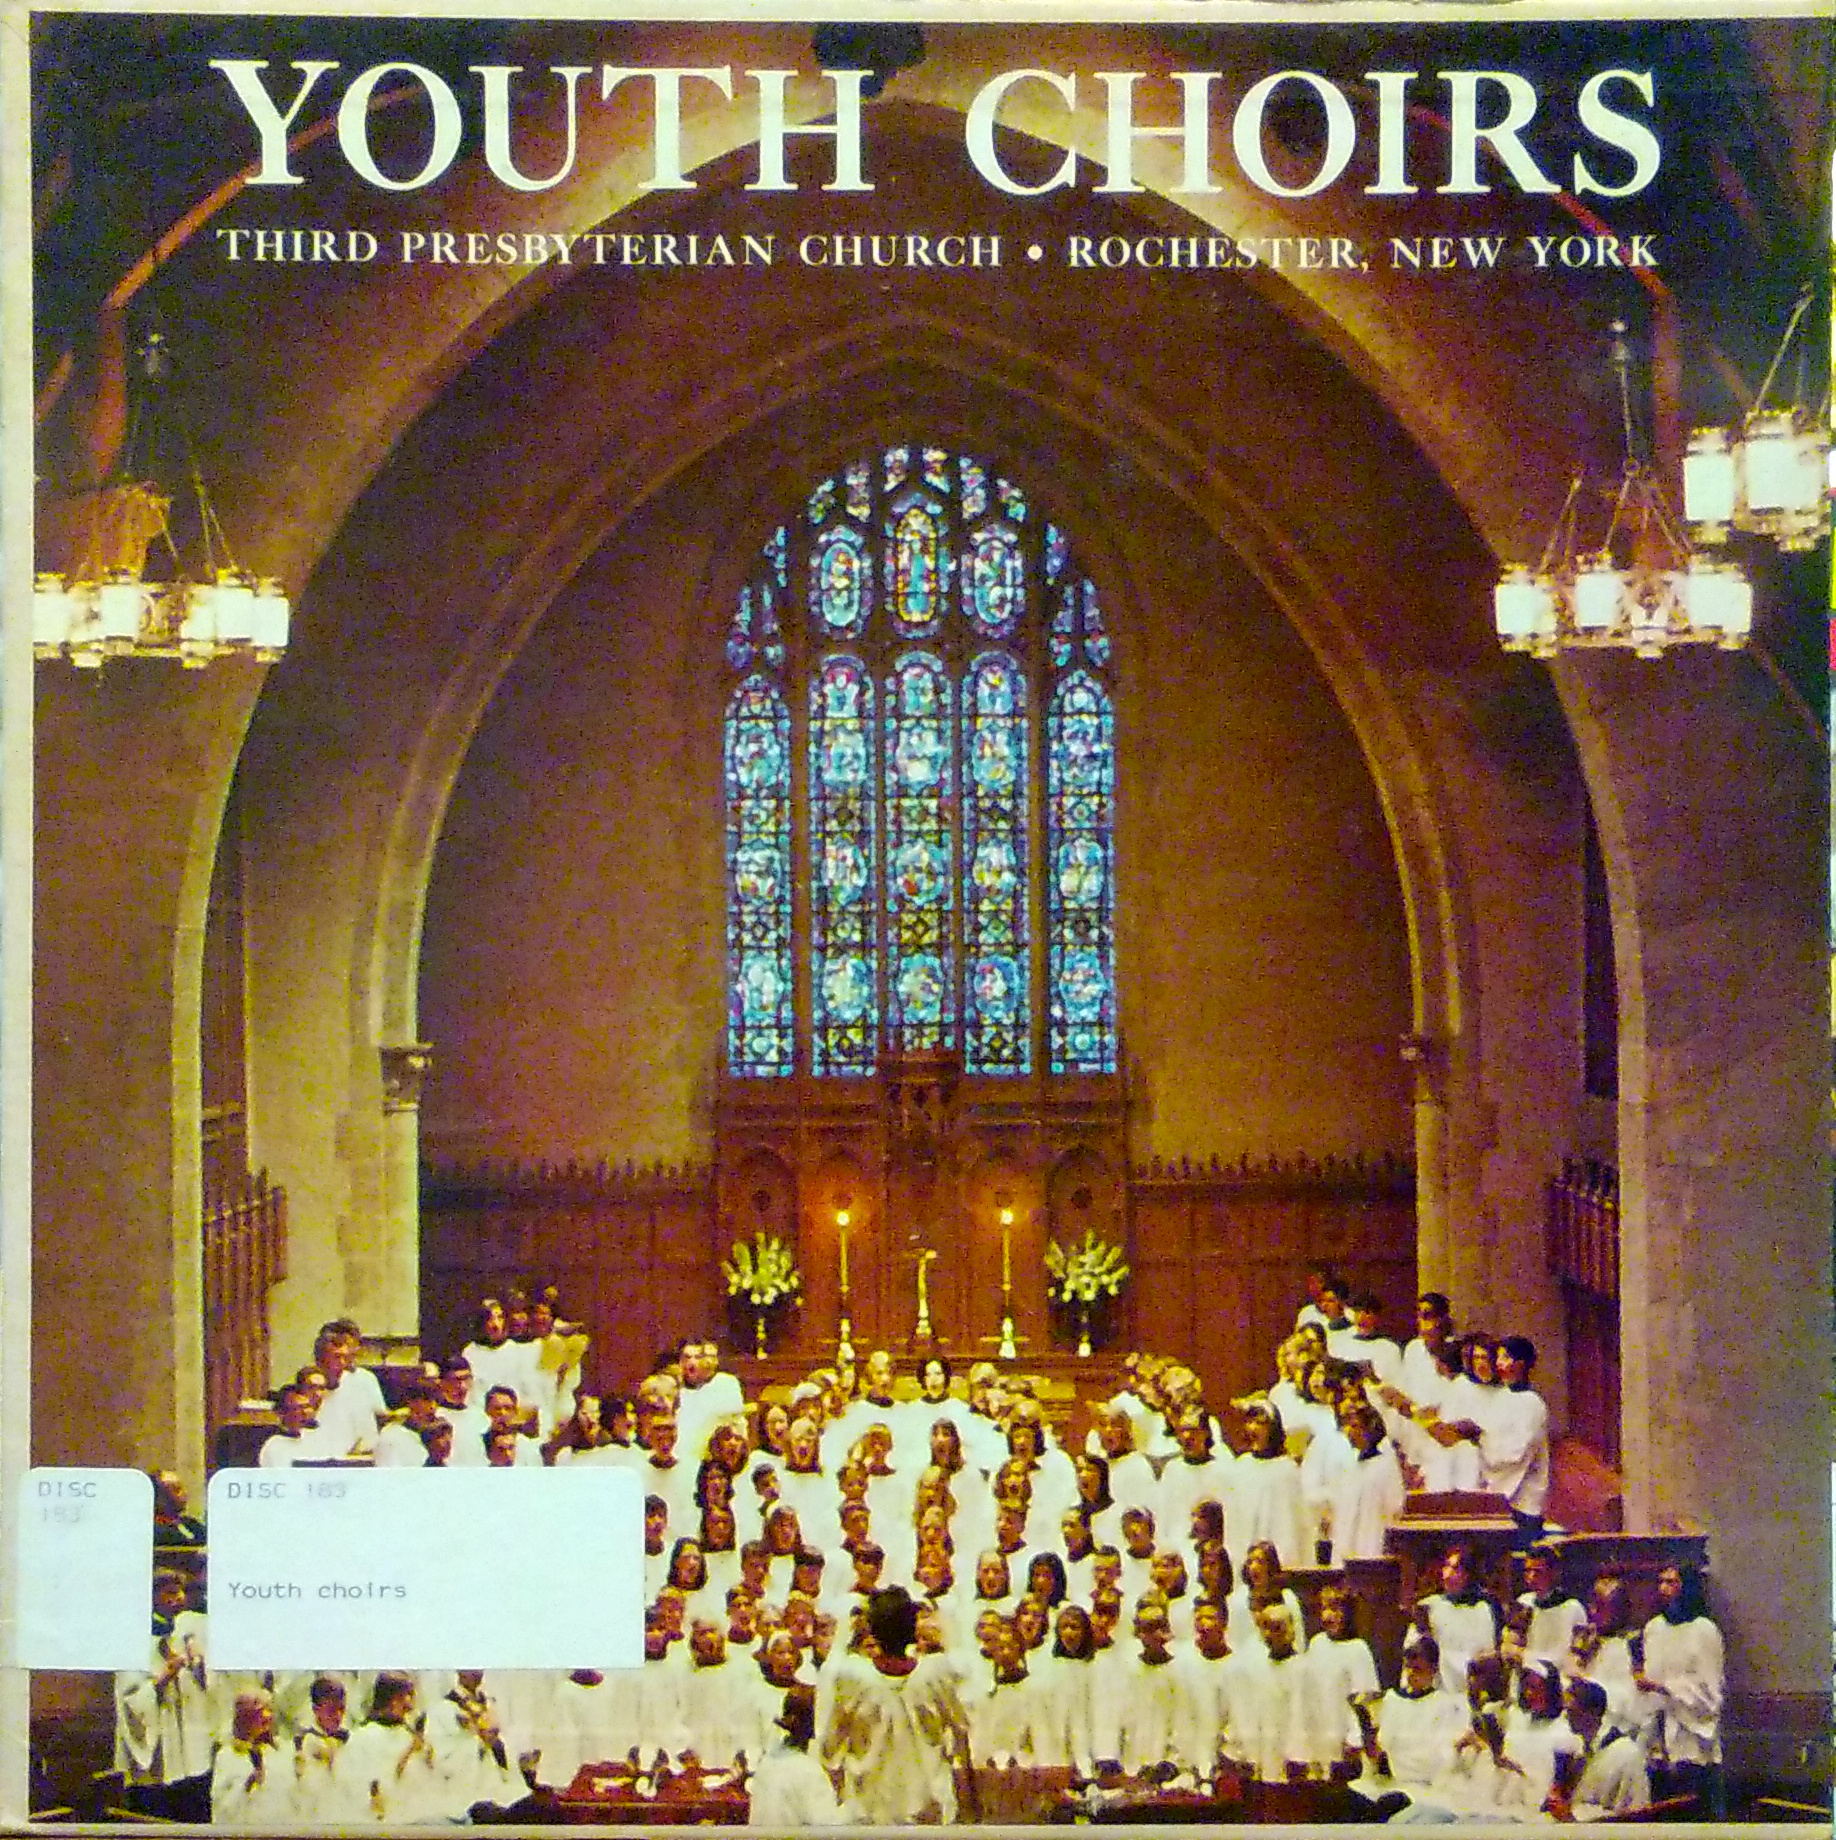 Youth choirs, Third Presbyterian Church, Rochester, N.Y., side 1.